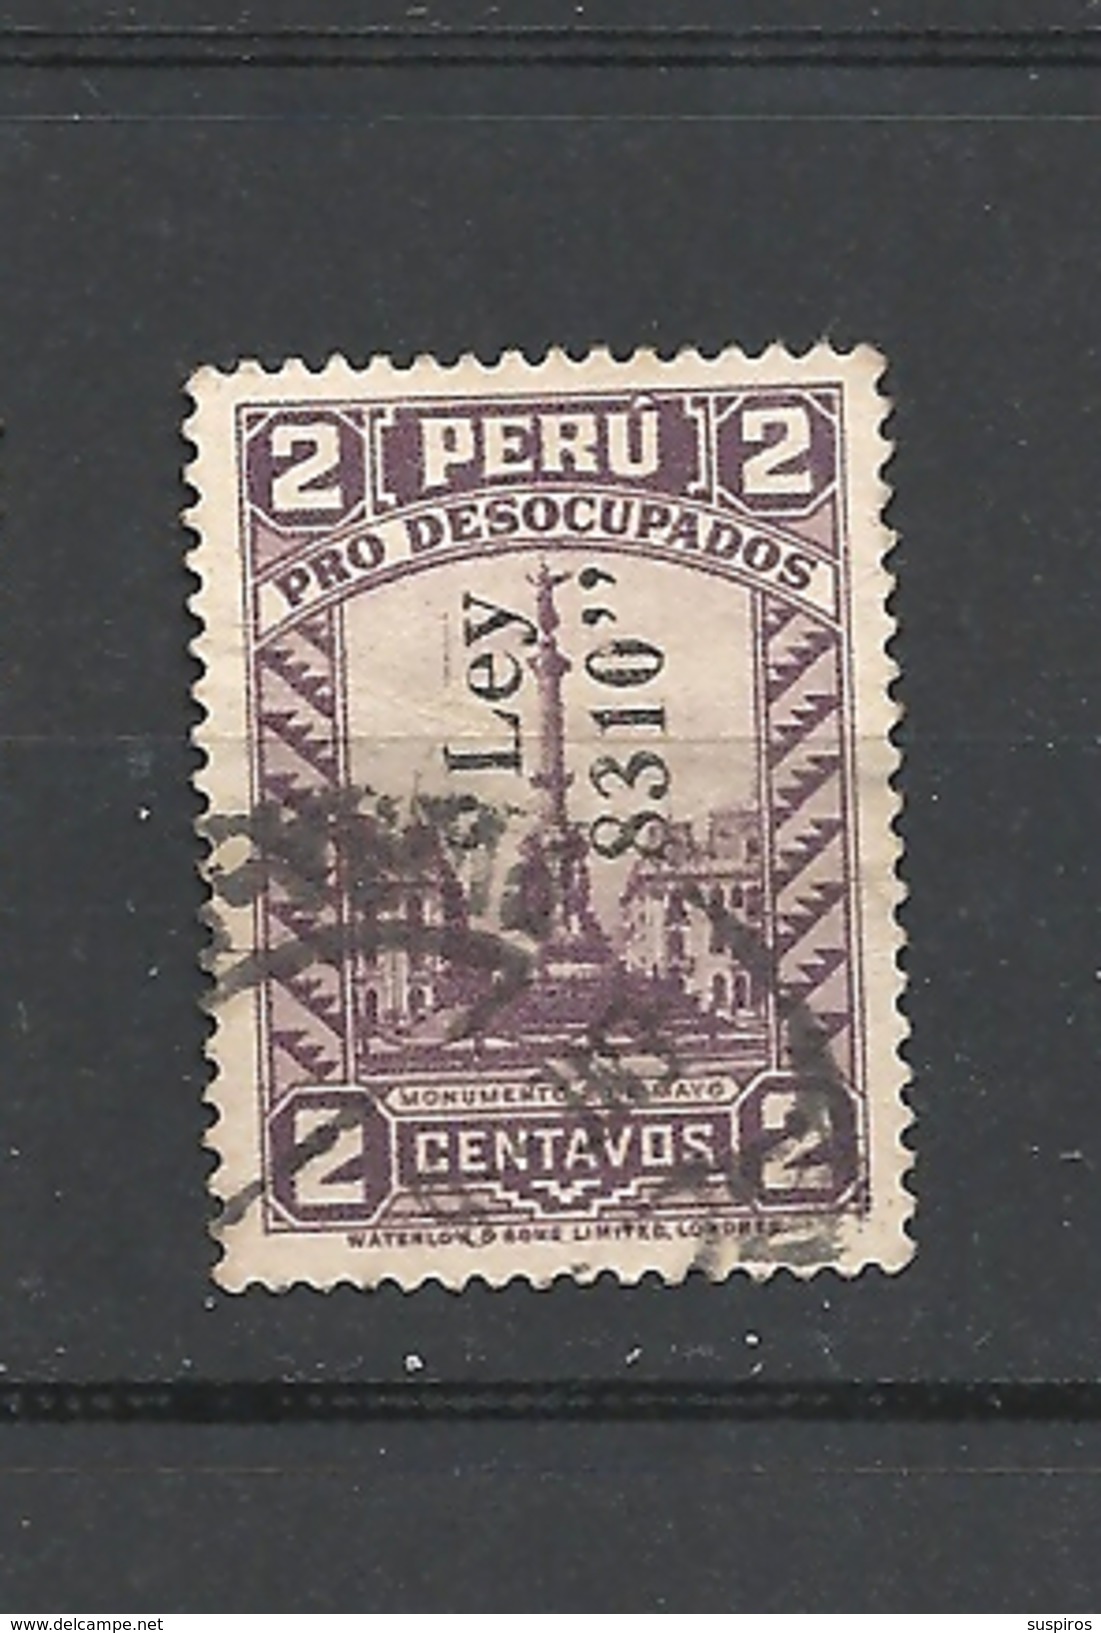 PERU   1936 PRO UNEMPLOYED  YVERT 334   USED  OVERPRINT LEY 8310 - Peru